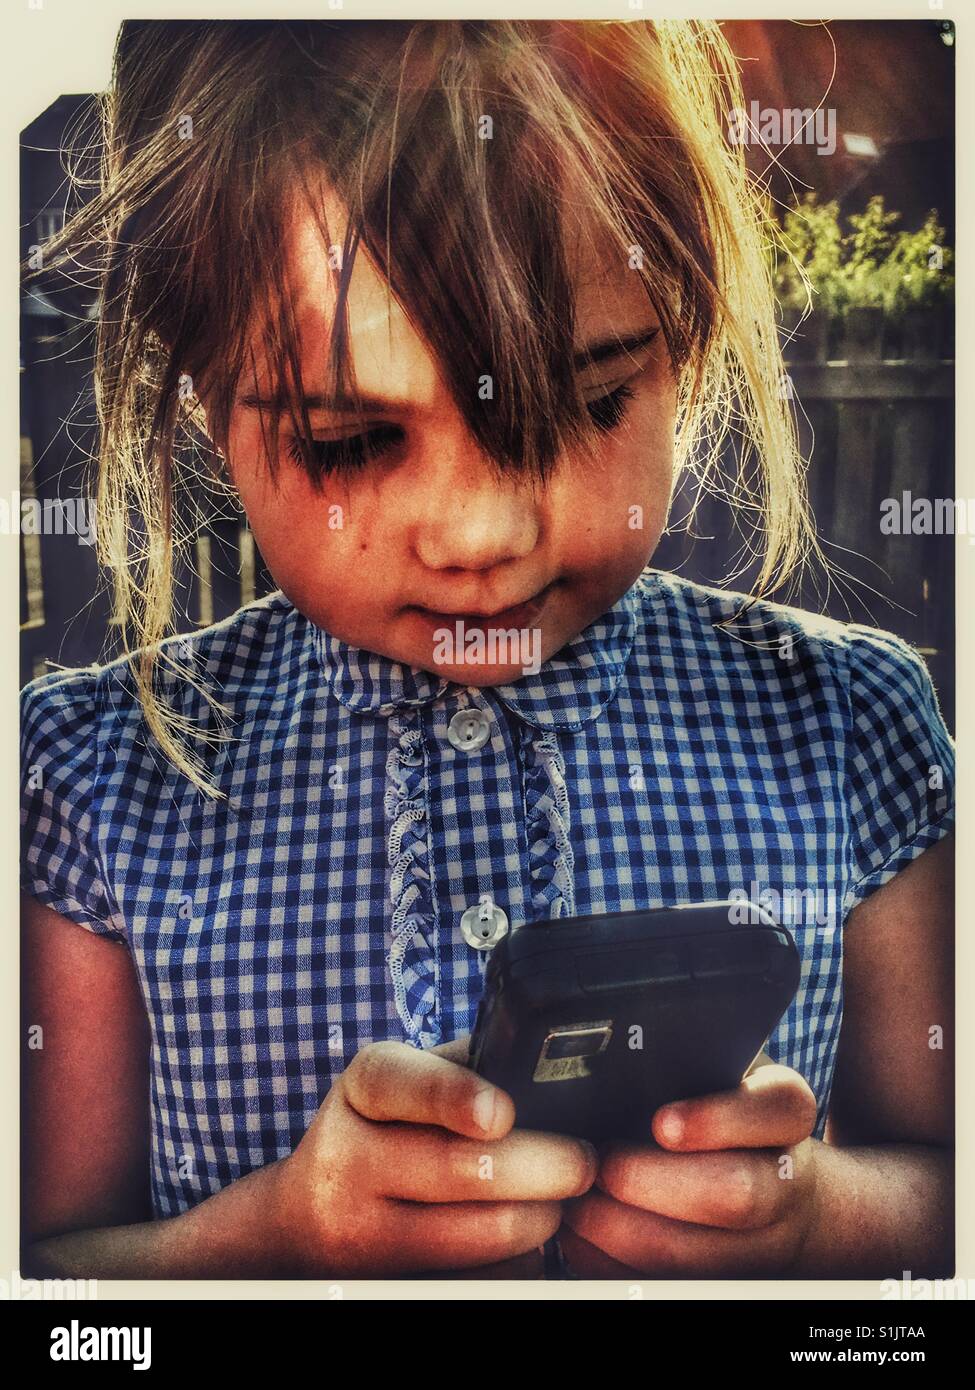 Bambina gioca con un telefono cellulare. Foto Stock